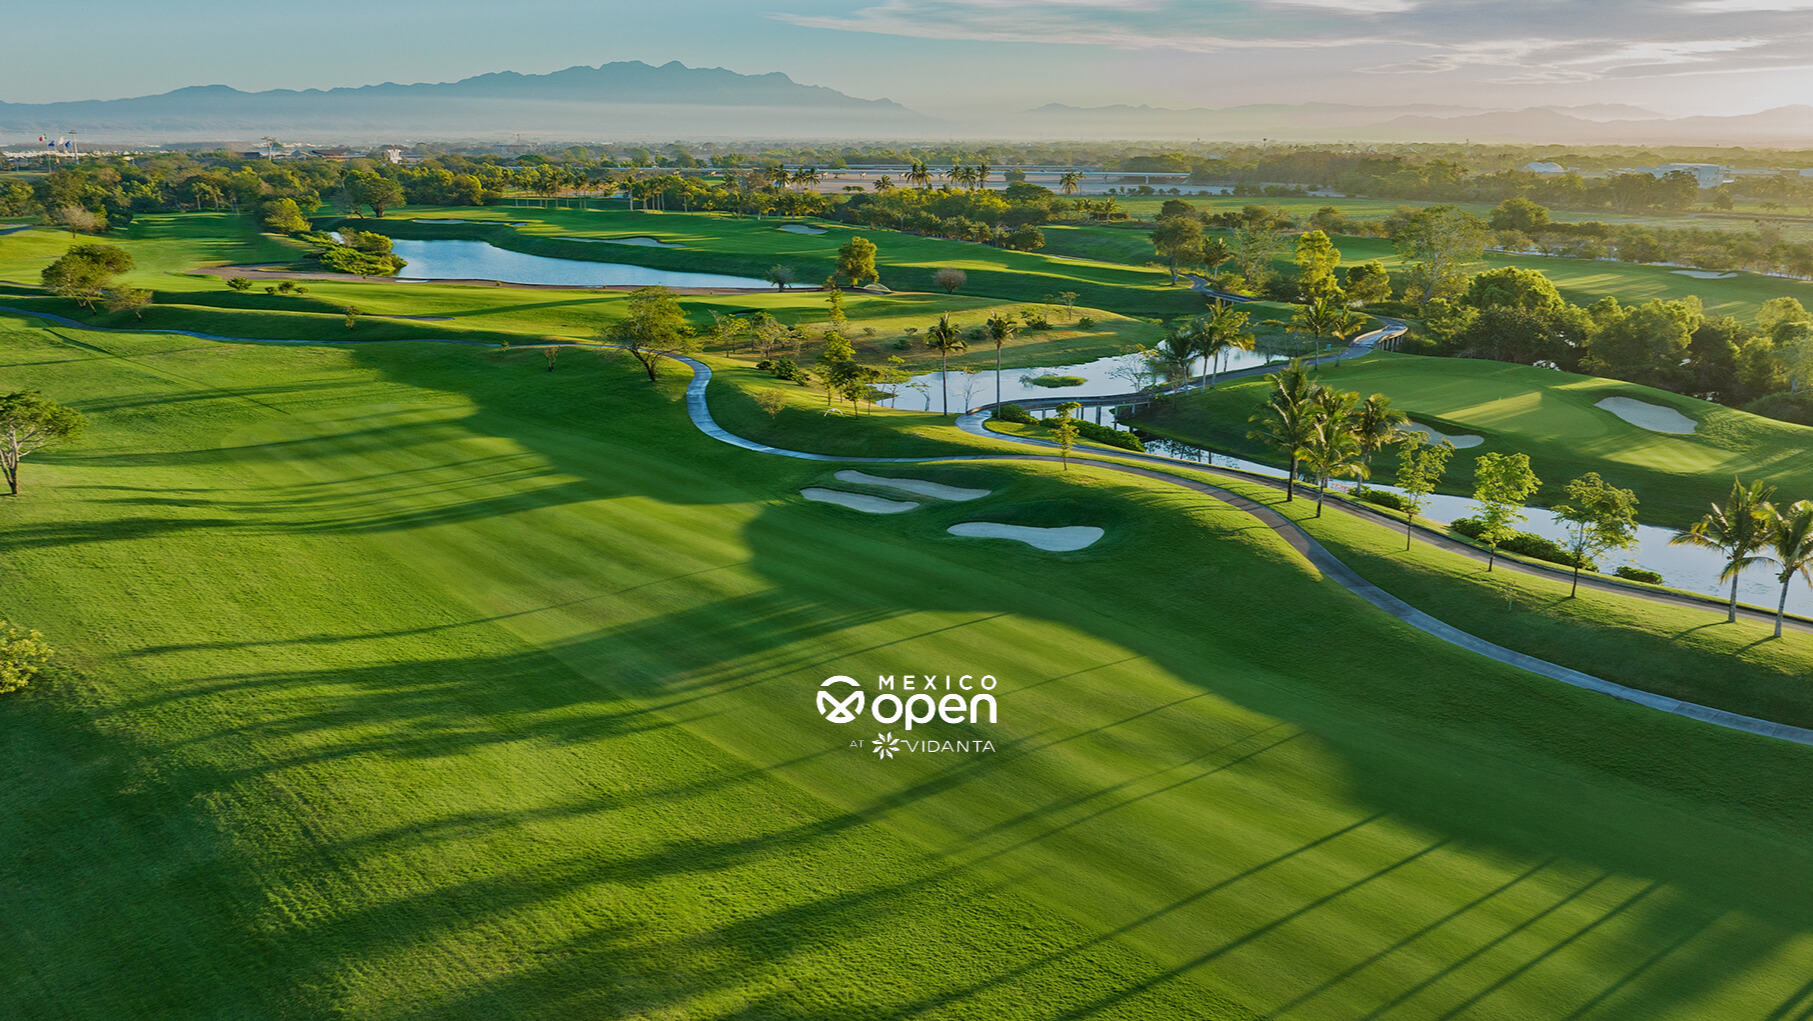 Imagen ilustrativa del campo de golf de Vidanta Vallarta donde se celebrará el México Open at Vidanta 2024